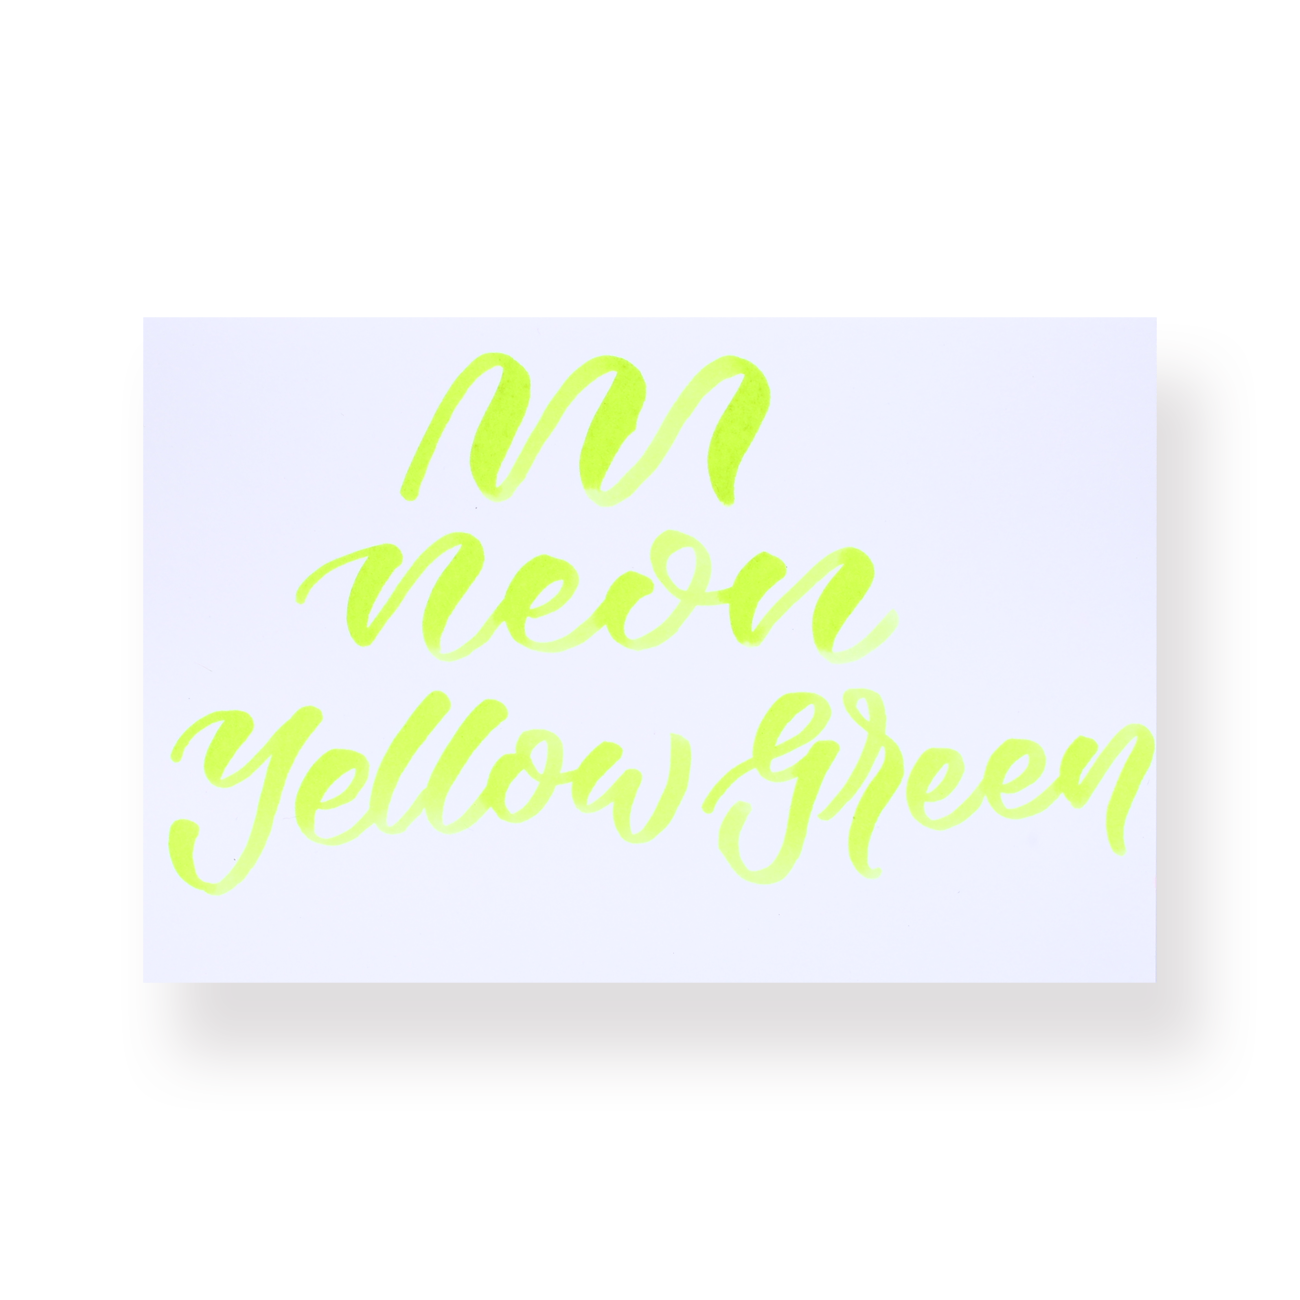 Karin Brushmarker Pro - Neon Yellow Green [0210]